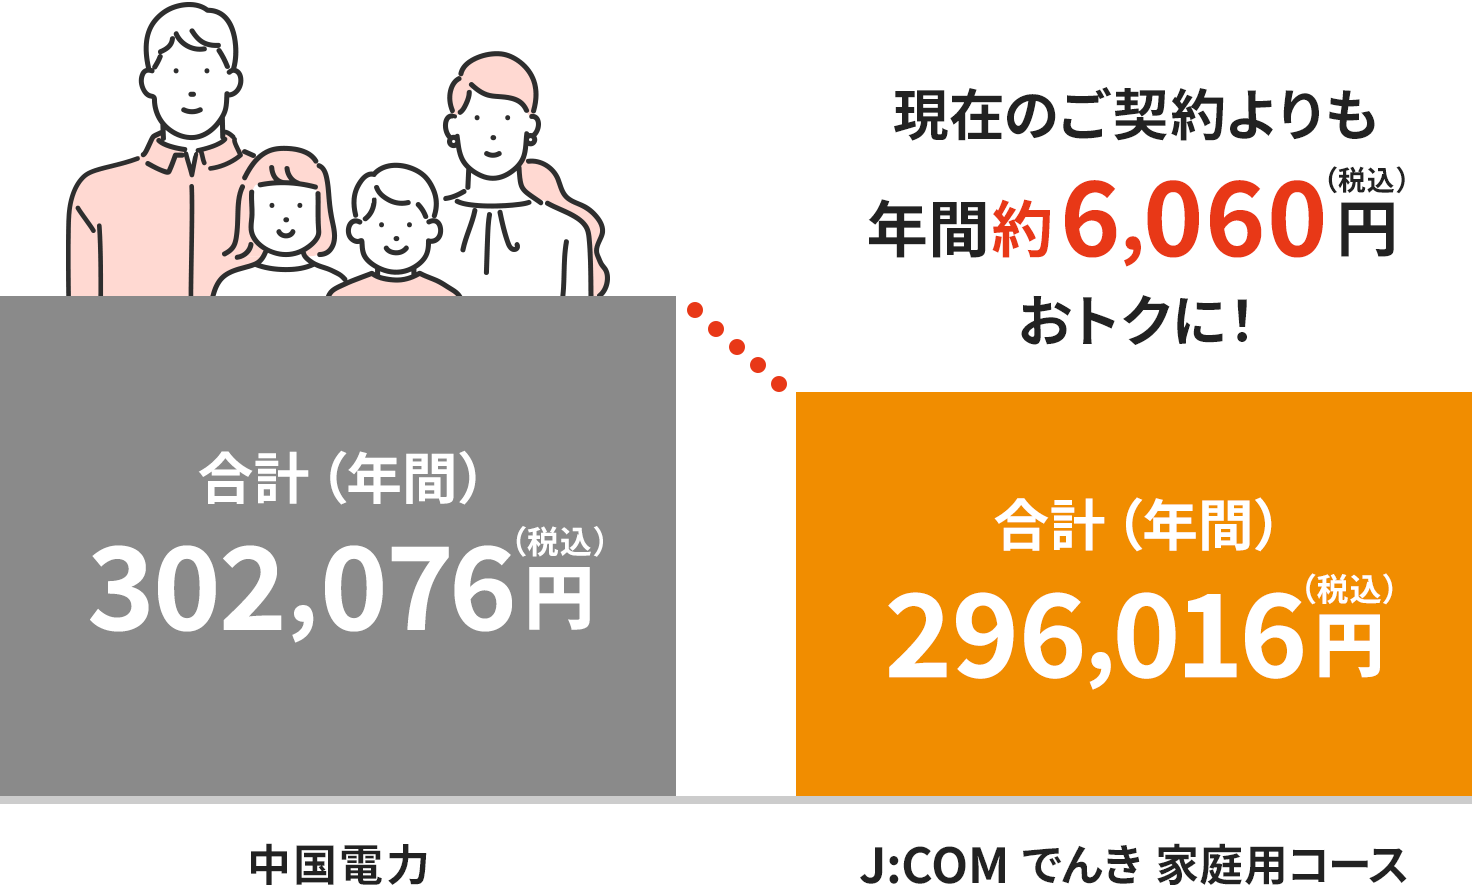 Hình ảnh phí tại khu vực Điện lực Chugoku (dành cho hộ gia đình 4 người)